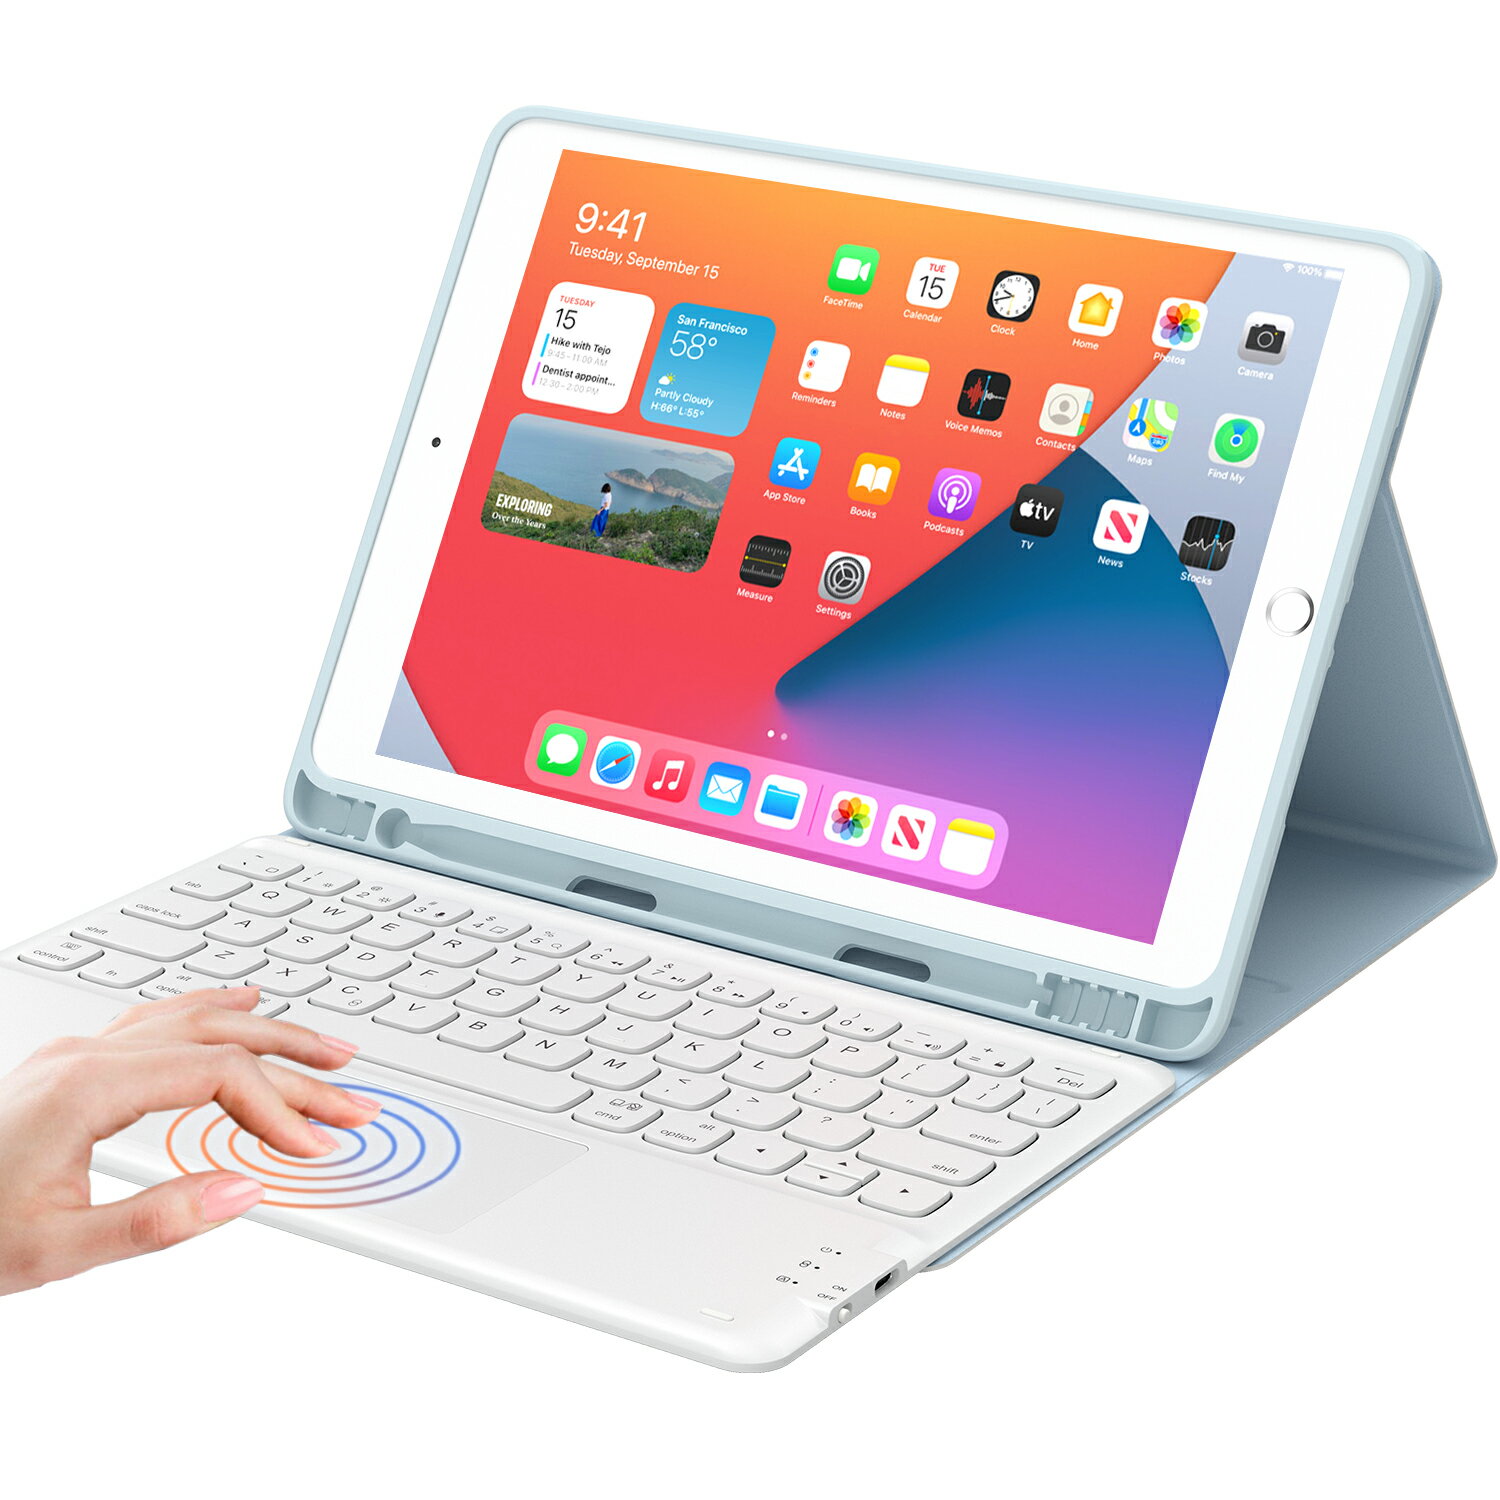 【10%オフ+ポイント10倍】iPad 9/8/7世代 キーボード ケース タッチパッド付き ipad 10.2 キーボード ケース2021/2020/2019モデル]Bluetooth キーボードカバー 脱着式 多角度調整 ペンシルホルダー付き アイパッド10.2インチキーボード iPad 10.2/iPad Air3/Pro 10.5 兼用